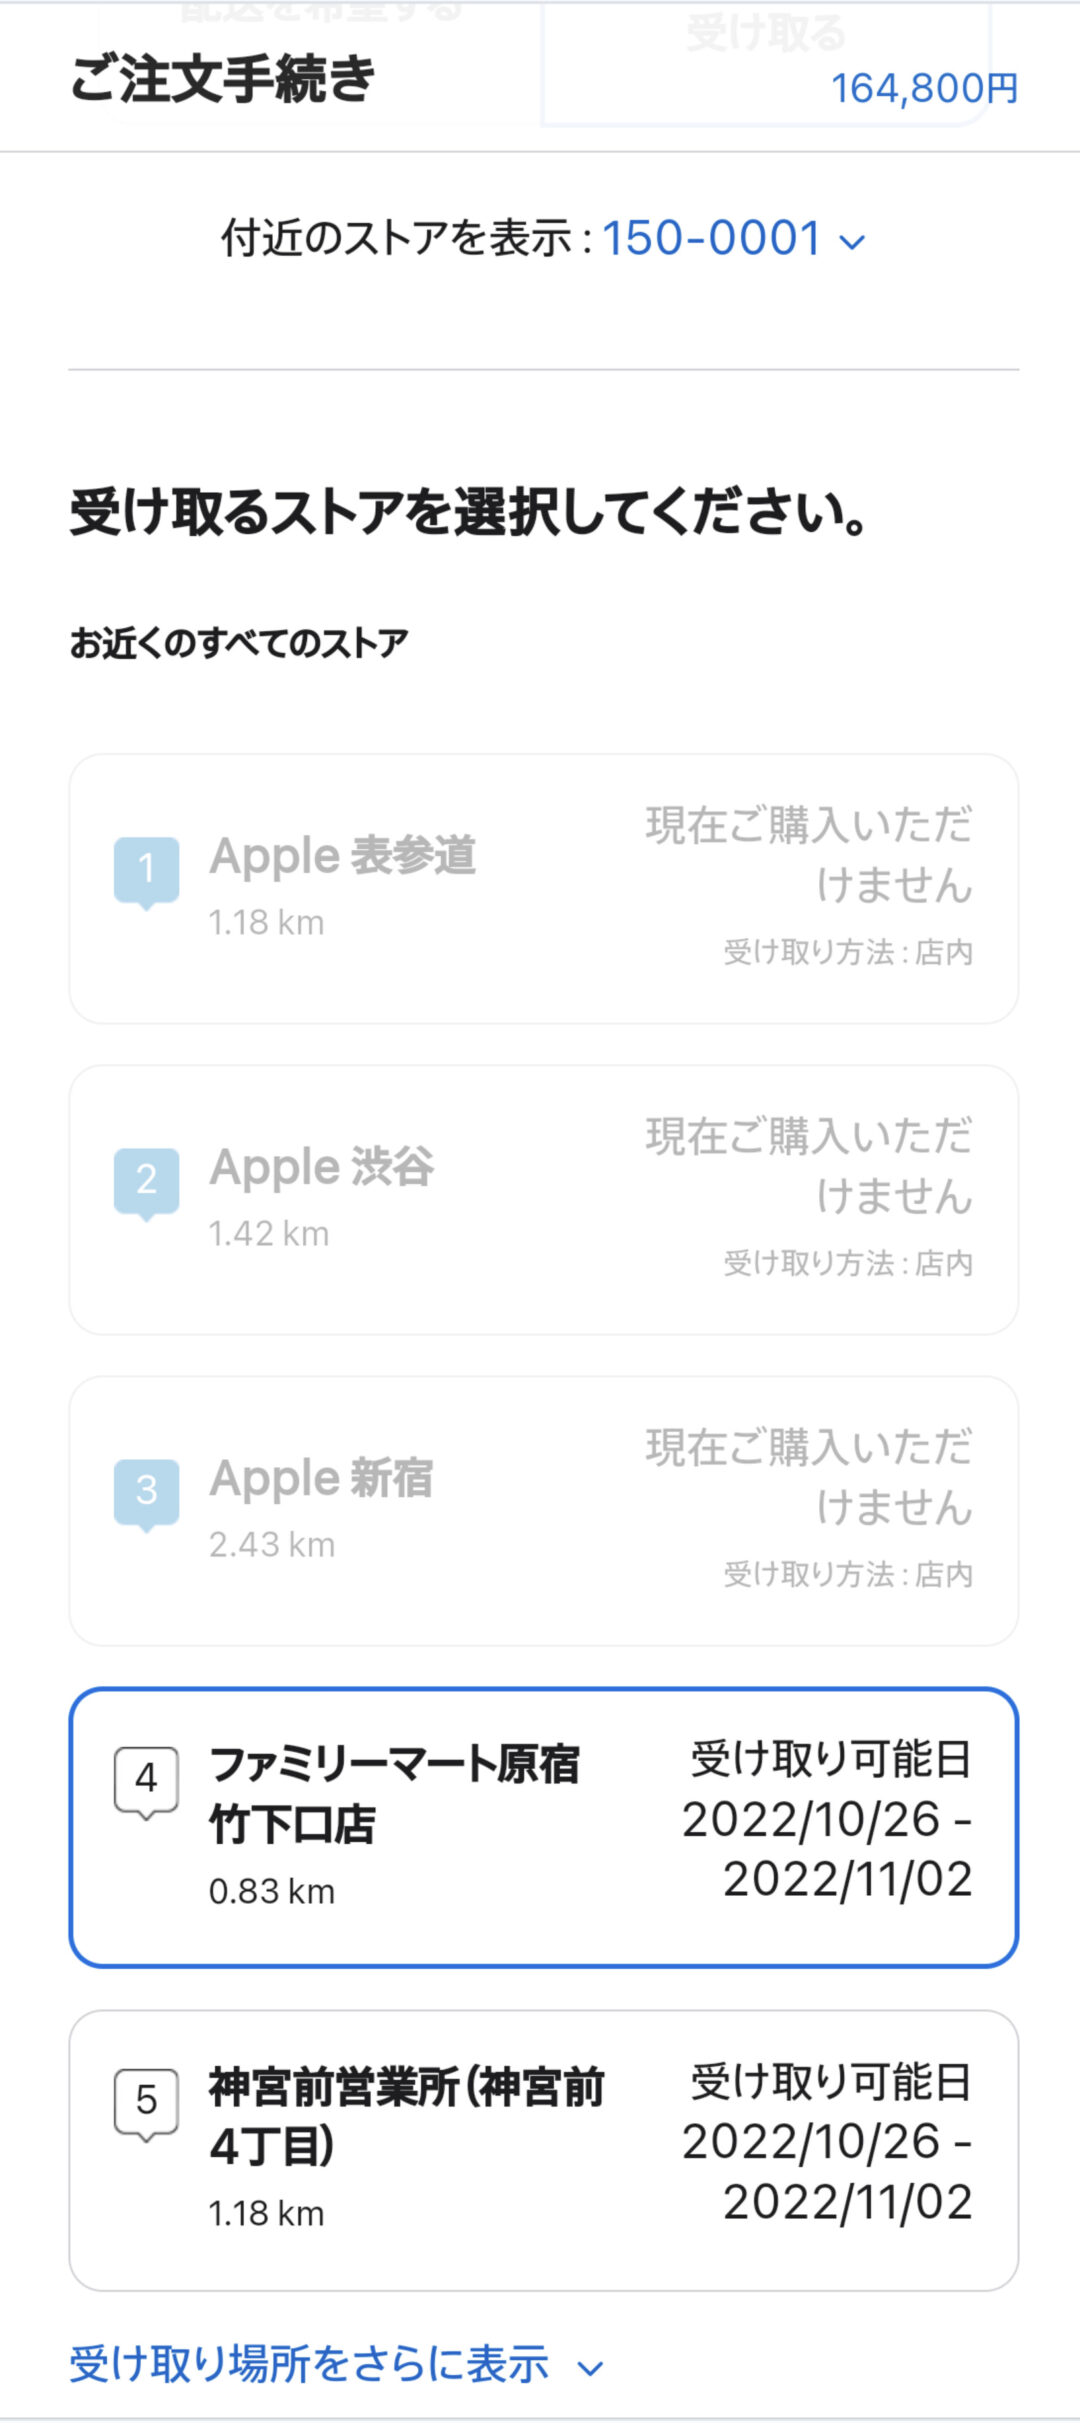 AppleオンラインストアのiPhone購入、受け取り店舗選択画面。